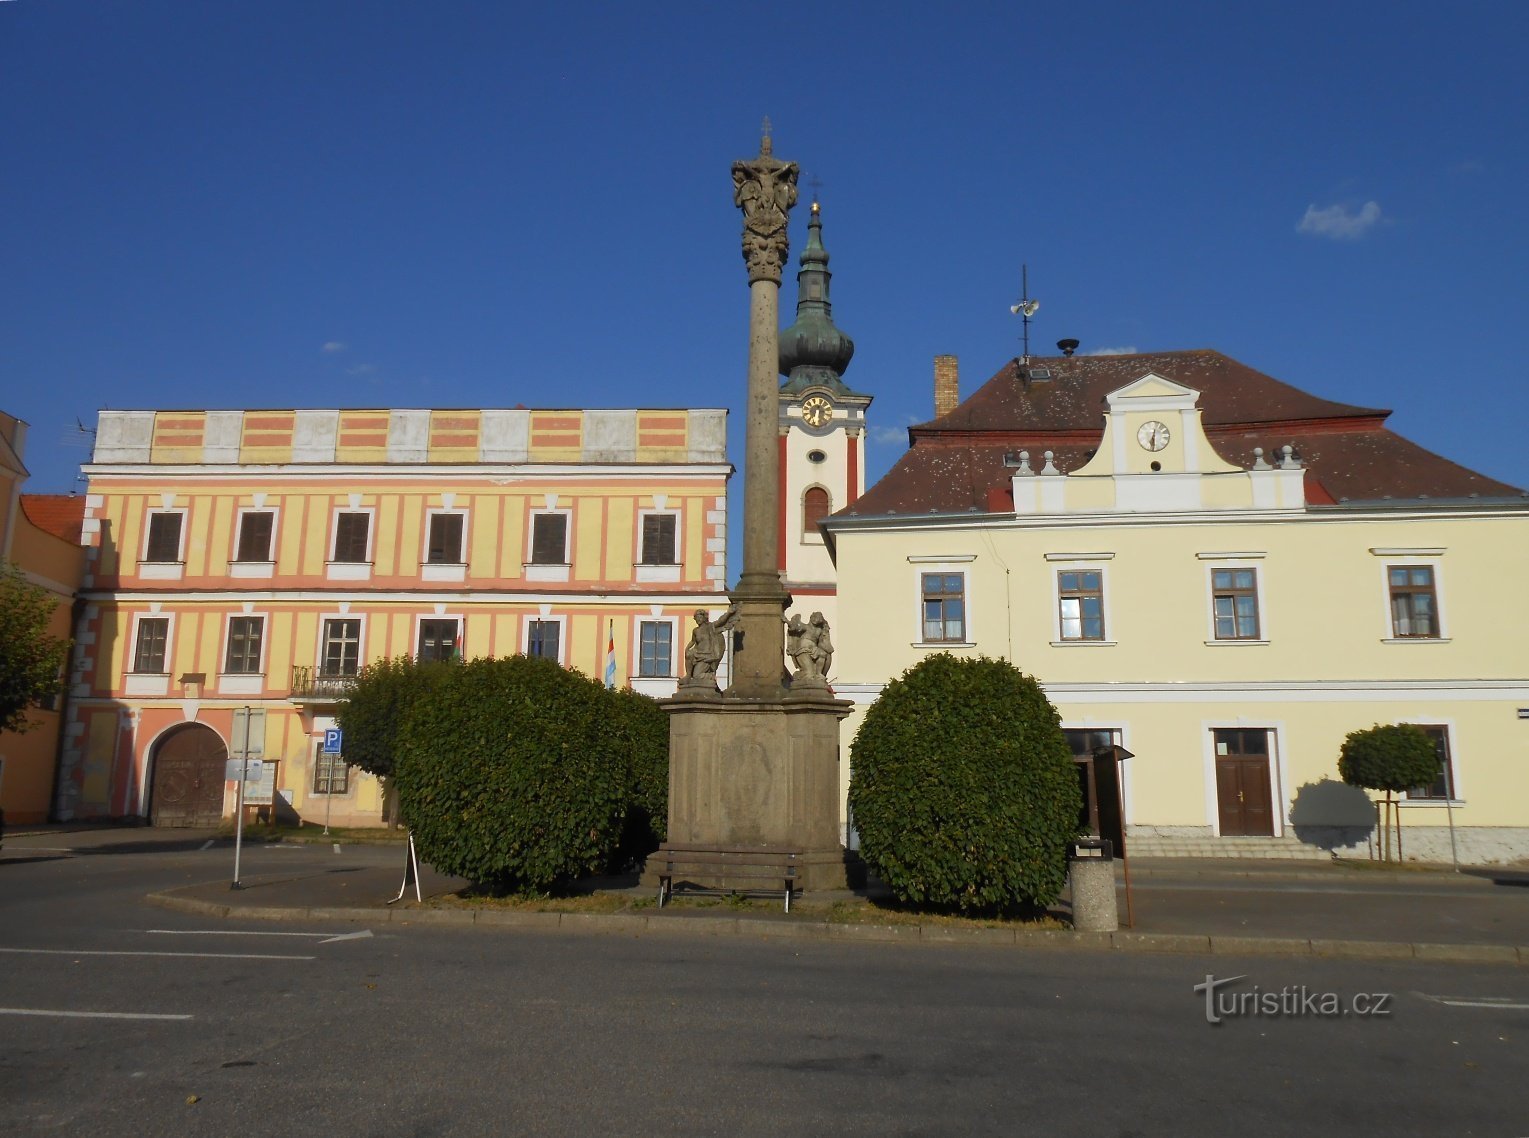 Nová Bystřice-Mírové náměstí-Nový zámek-coloană cu o sculptură a Sfintei Treimi